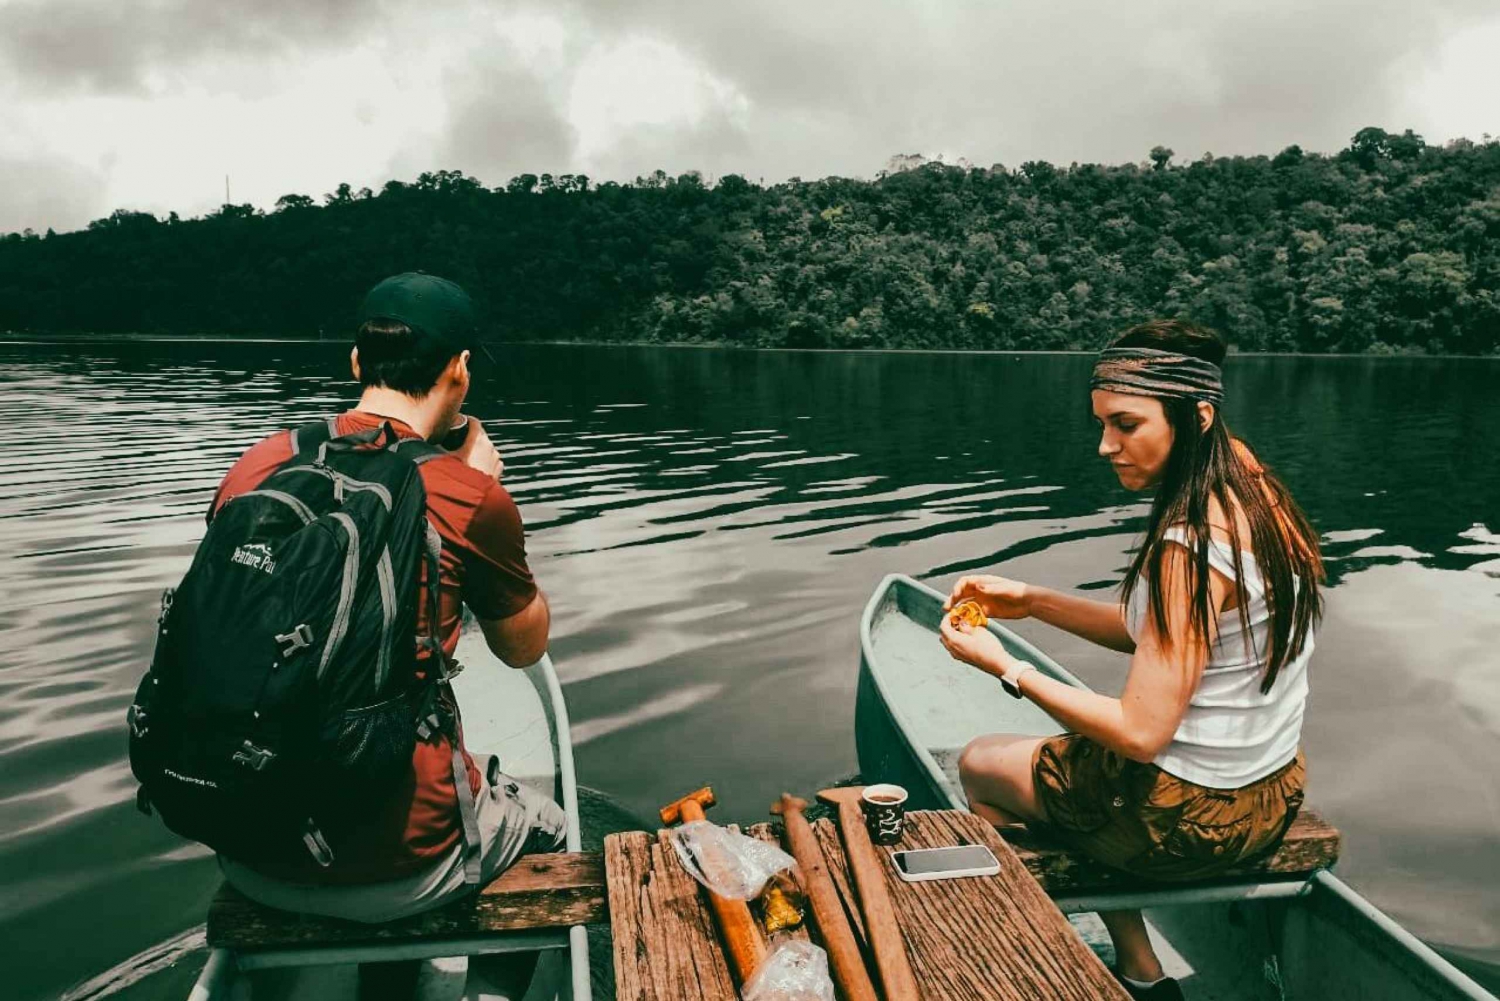 Munduk: Kanopadling i innsjøen og oppdagelse av et hemmelig tempel